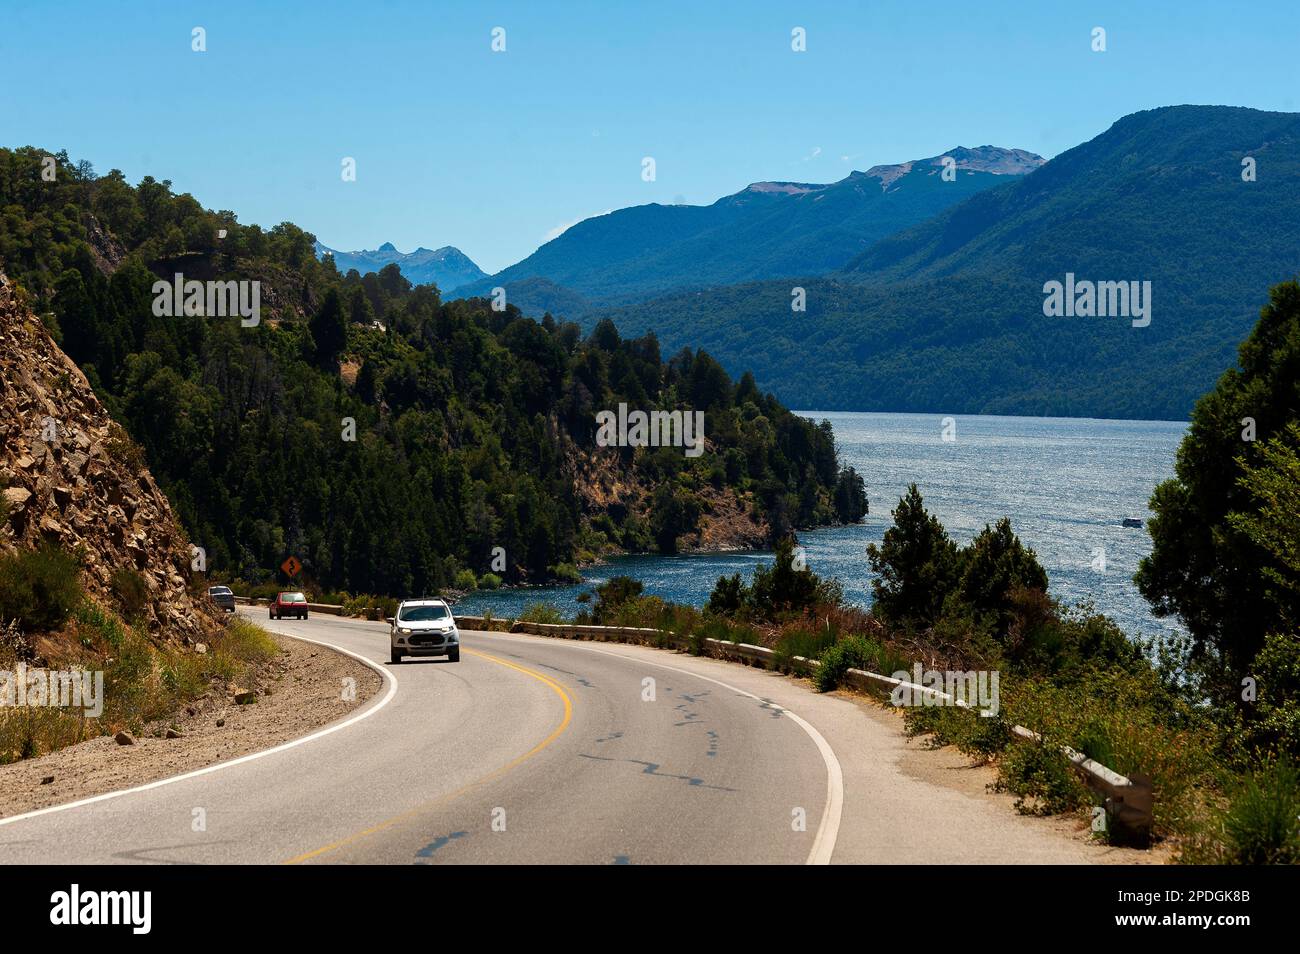 Lago Nahuel Huapi come visto dalla Ruta 40, Ruta de Los Siete Lagos o Route of Seven Lakes, Neuquen, Argentina Foto Stock